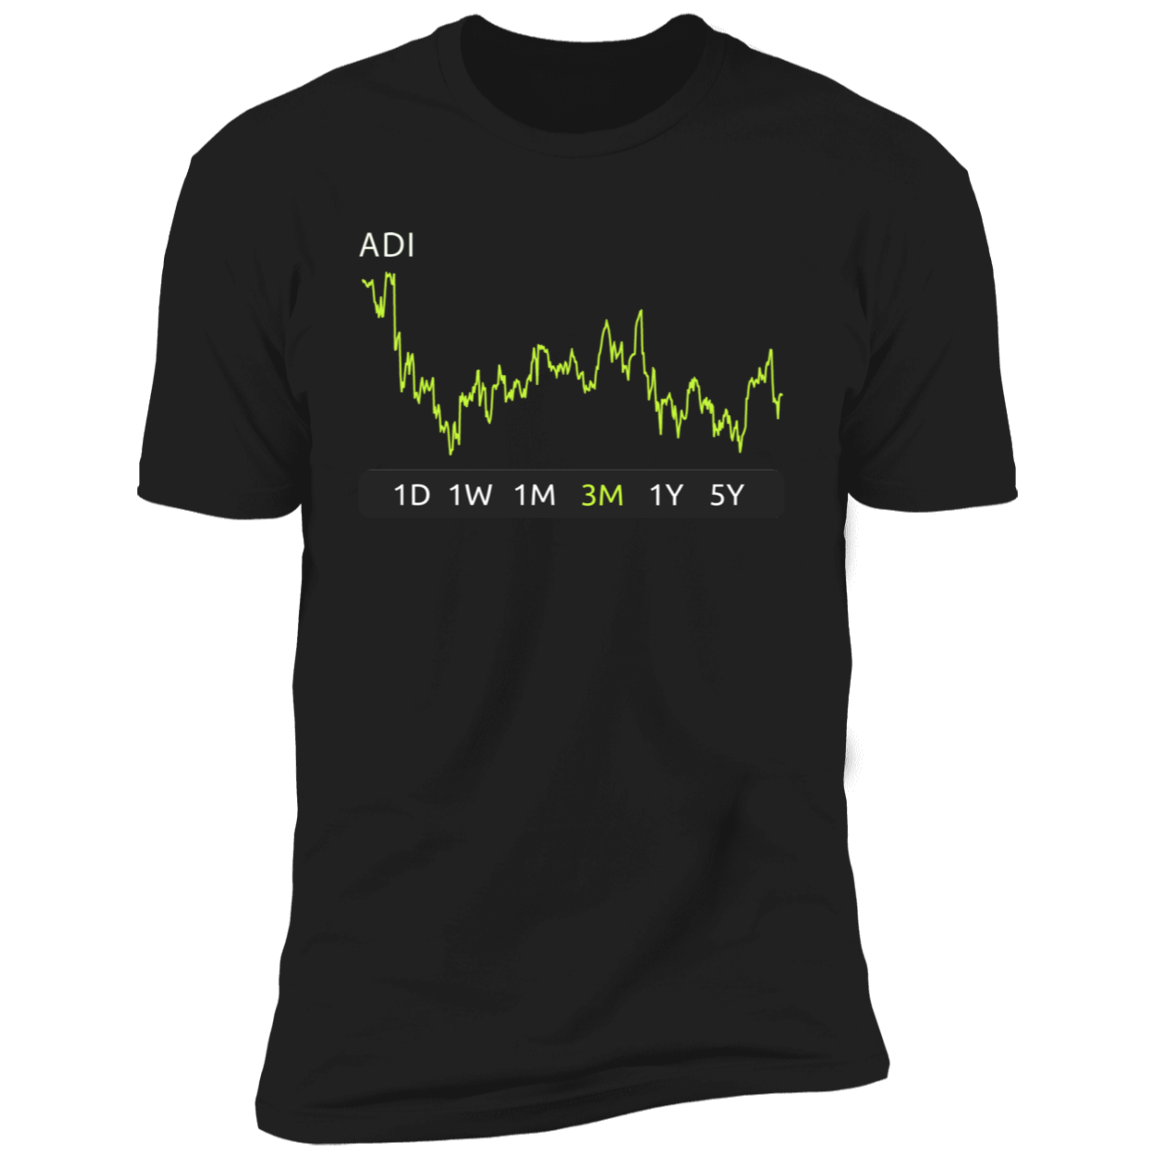 ADI Stock 3m Premium T-Shirt